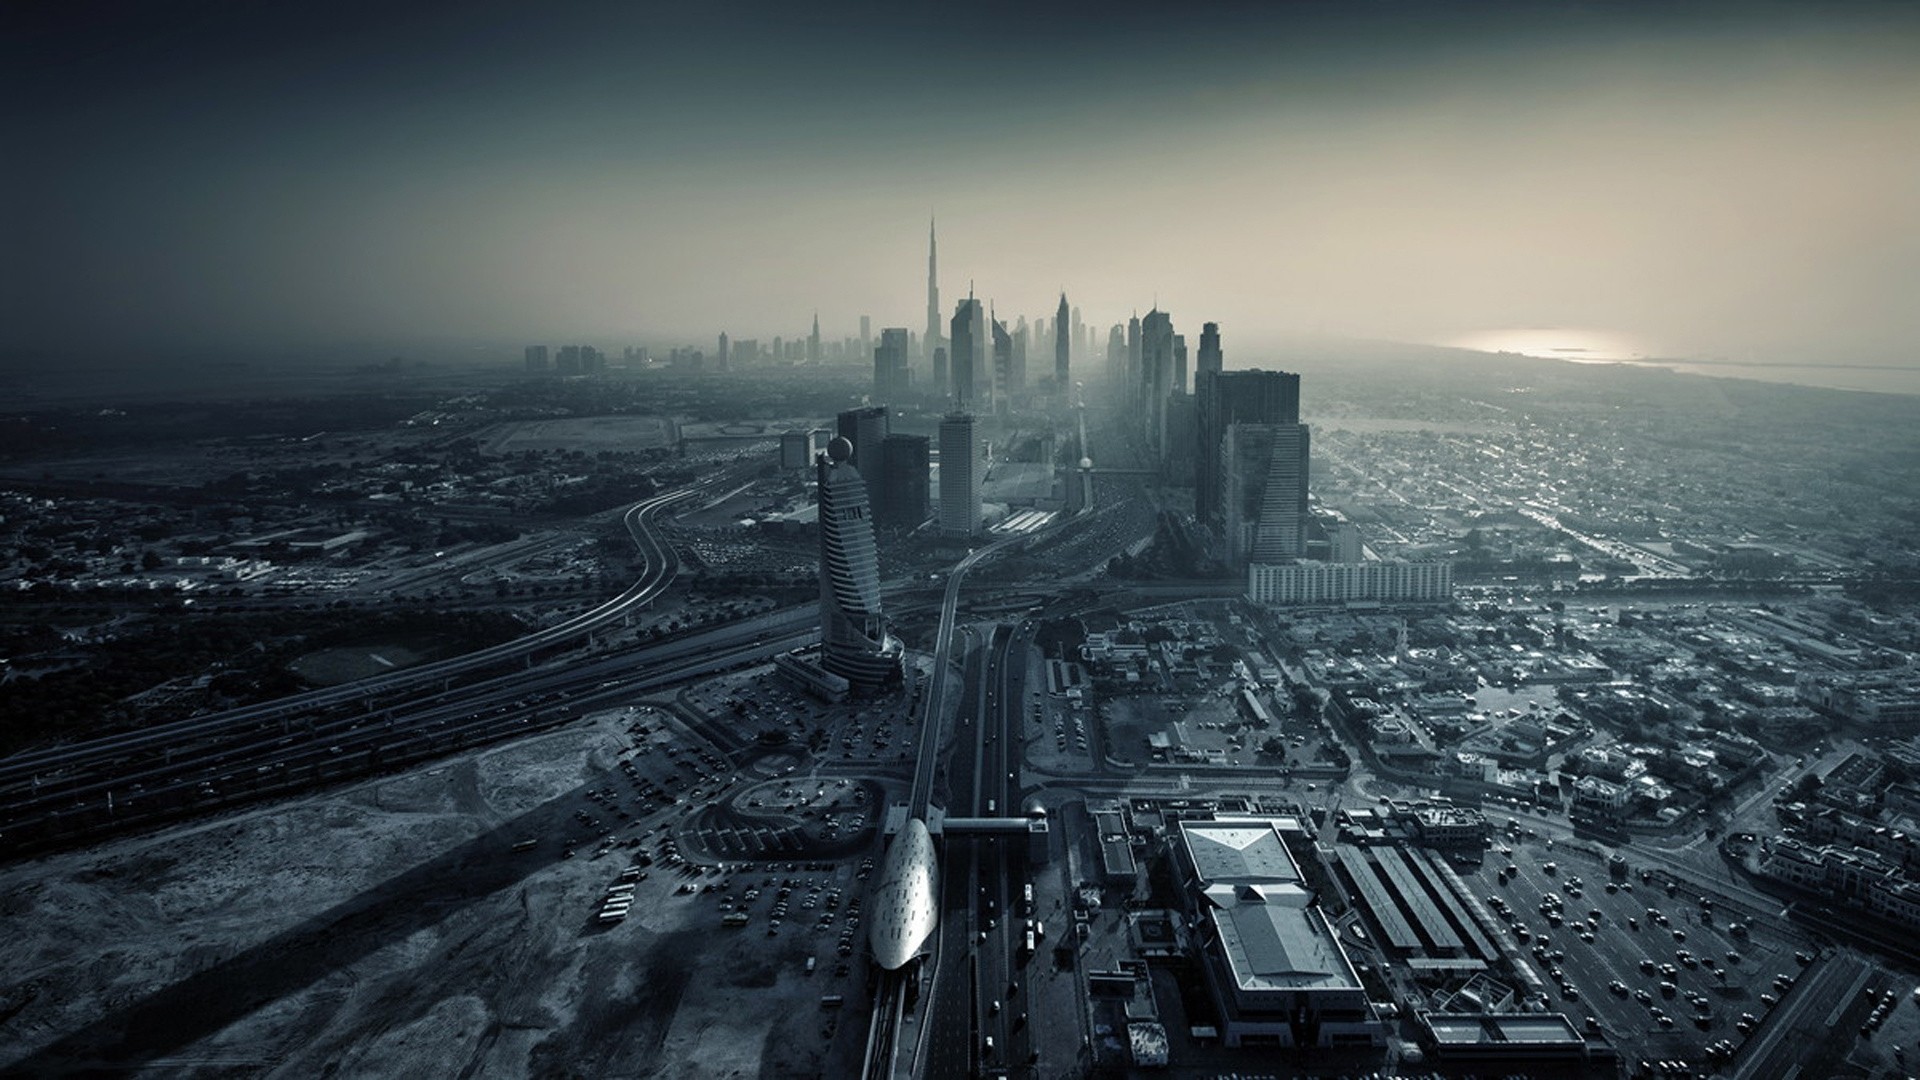 General 1920x1080 Dubai United Arab Emirates monochrome city cityscape